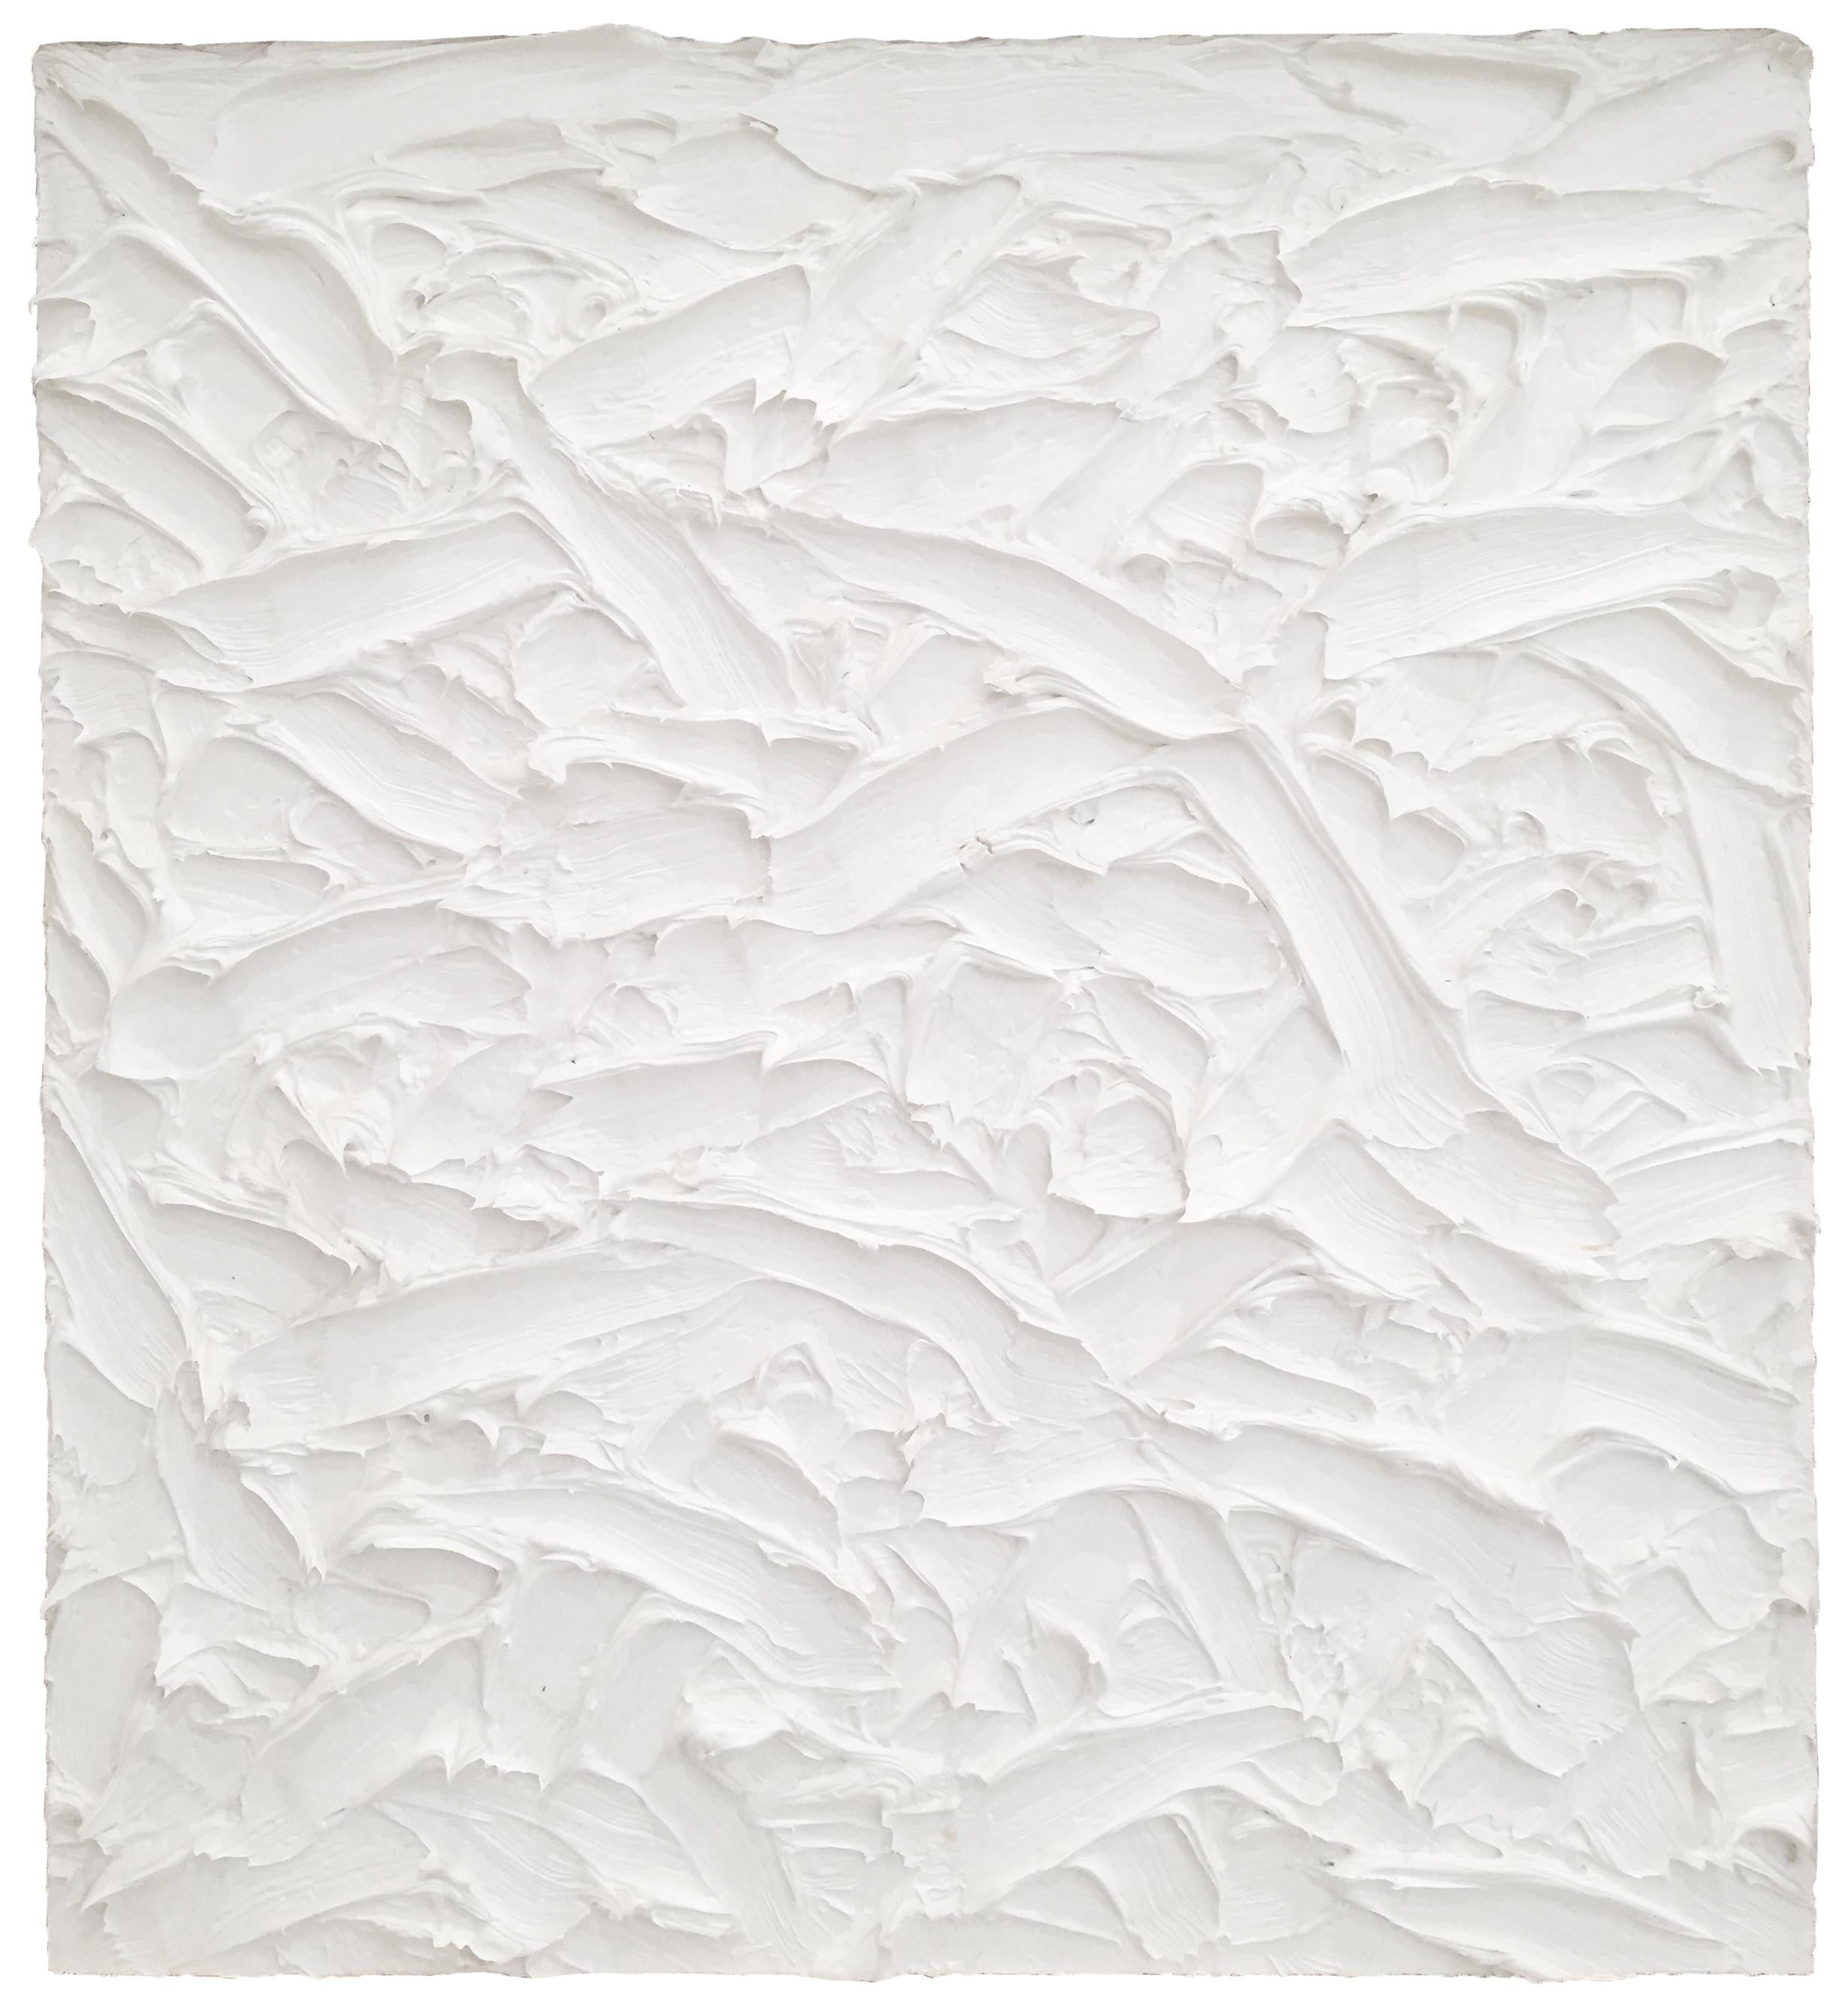 James Hayward Abstract Painting – Abstract #245